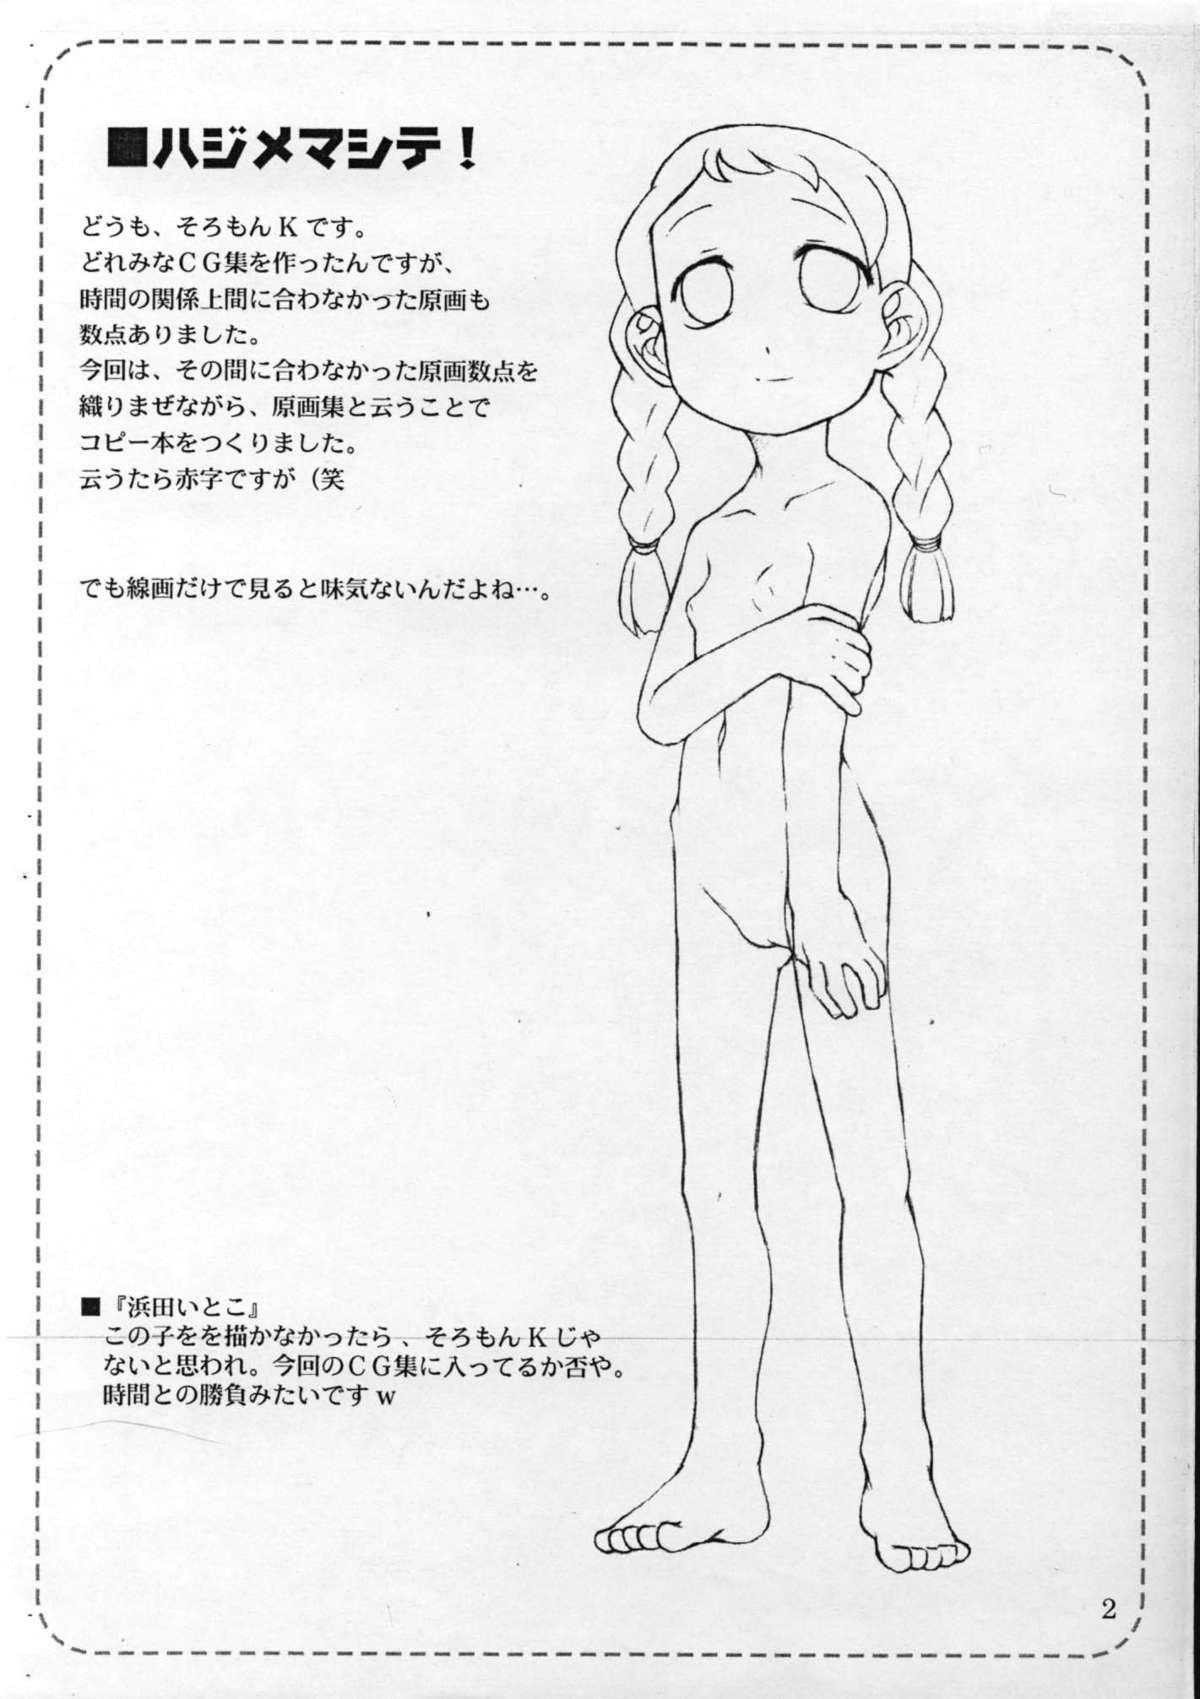 Girl Girl Wakippo 2 Gengashuu - Ojamajo doremi Rubia - Page 2